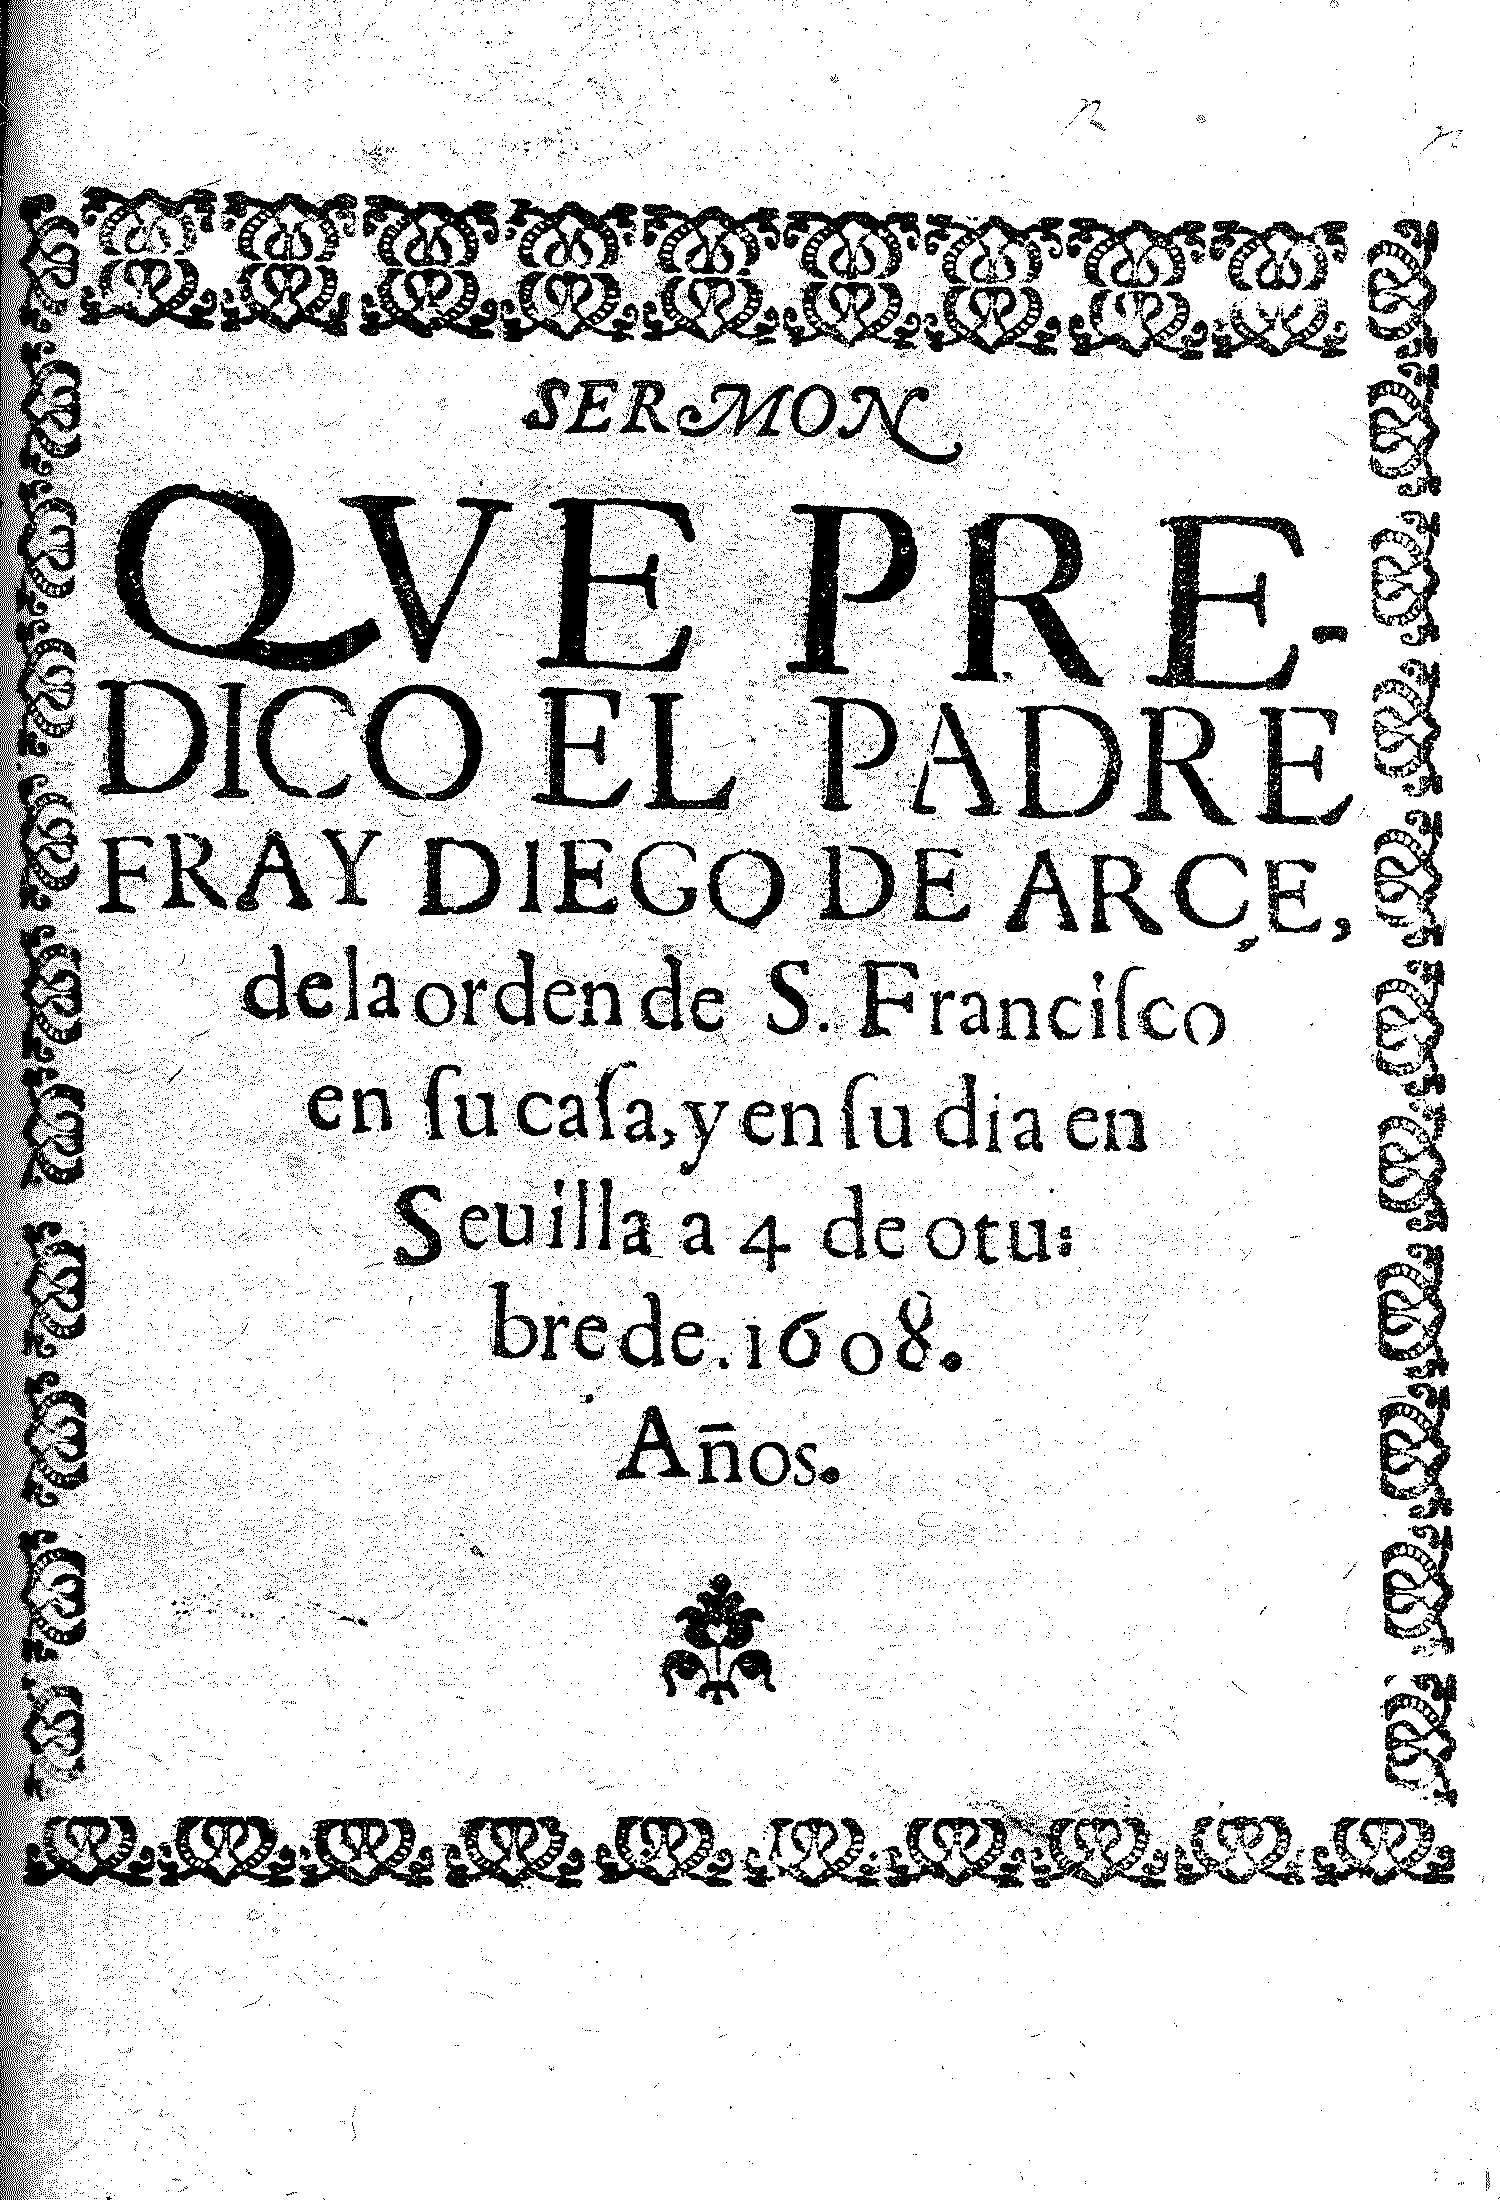 Sermon que predico el padre Fray Diego de Arce de la orden de S. Francisco en su casa, y en su día en Sevilla a 4 de octubre de 1608.